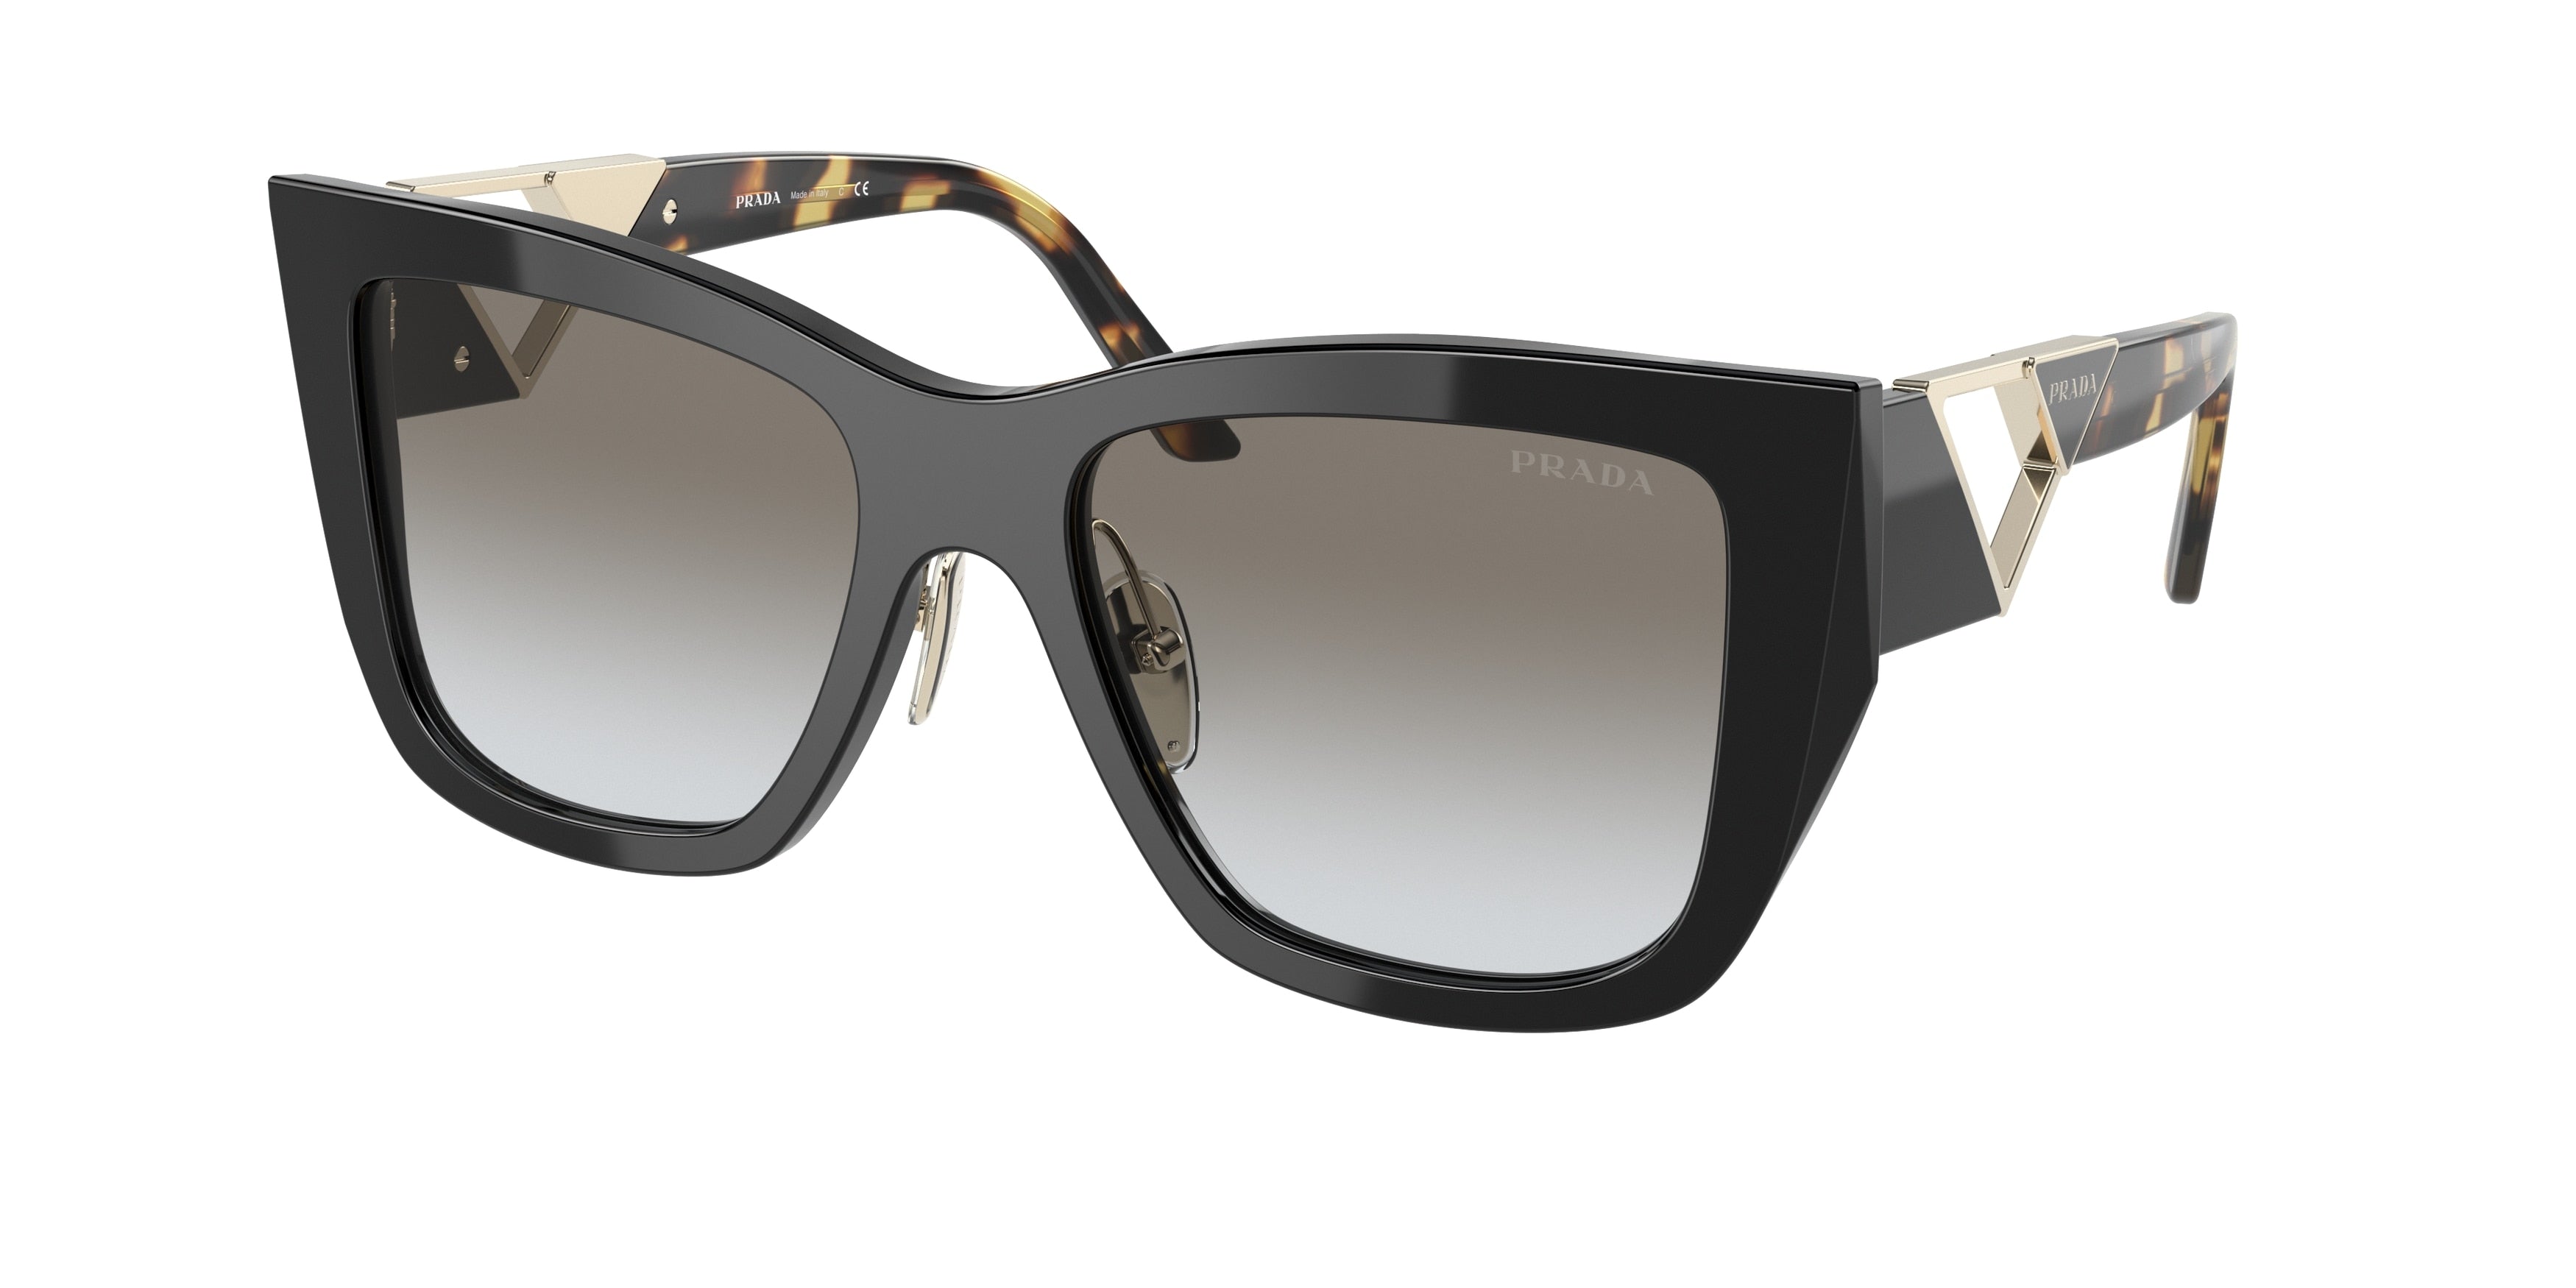 Prada PR21YS Square Sunglasses  1AB0A7-Black 54-140-18 - Color Map Black